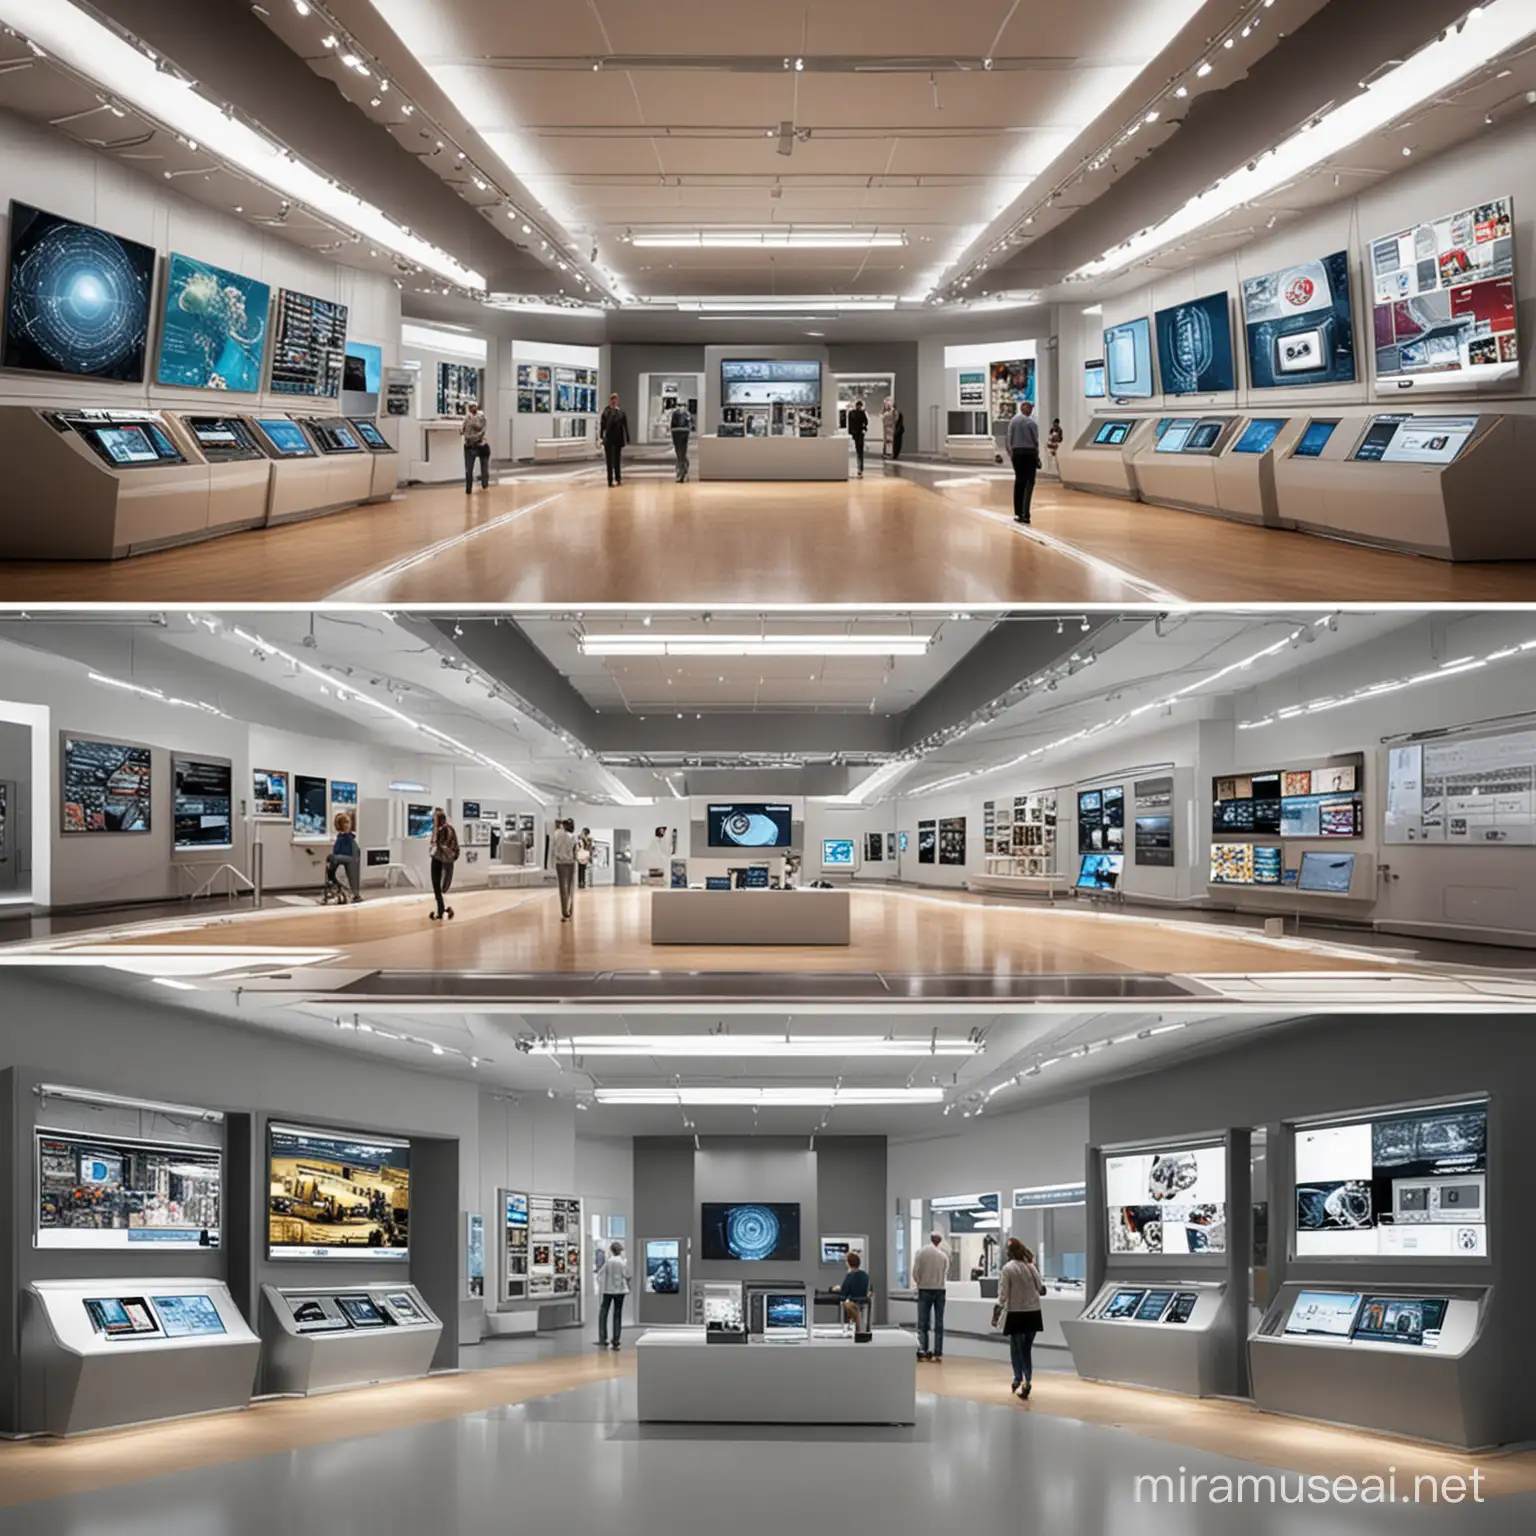 اريد ٤ لقطات منظوريه لفراغ تصميم داخلي لمتحف التكنولوجيا و الفنون يحتوي علي وحدات عرض و شاشات عرض تكنولوجيه و  روبوتات